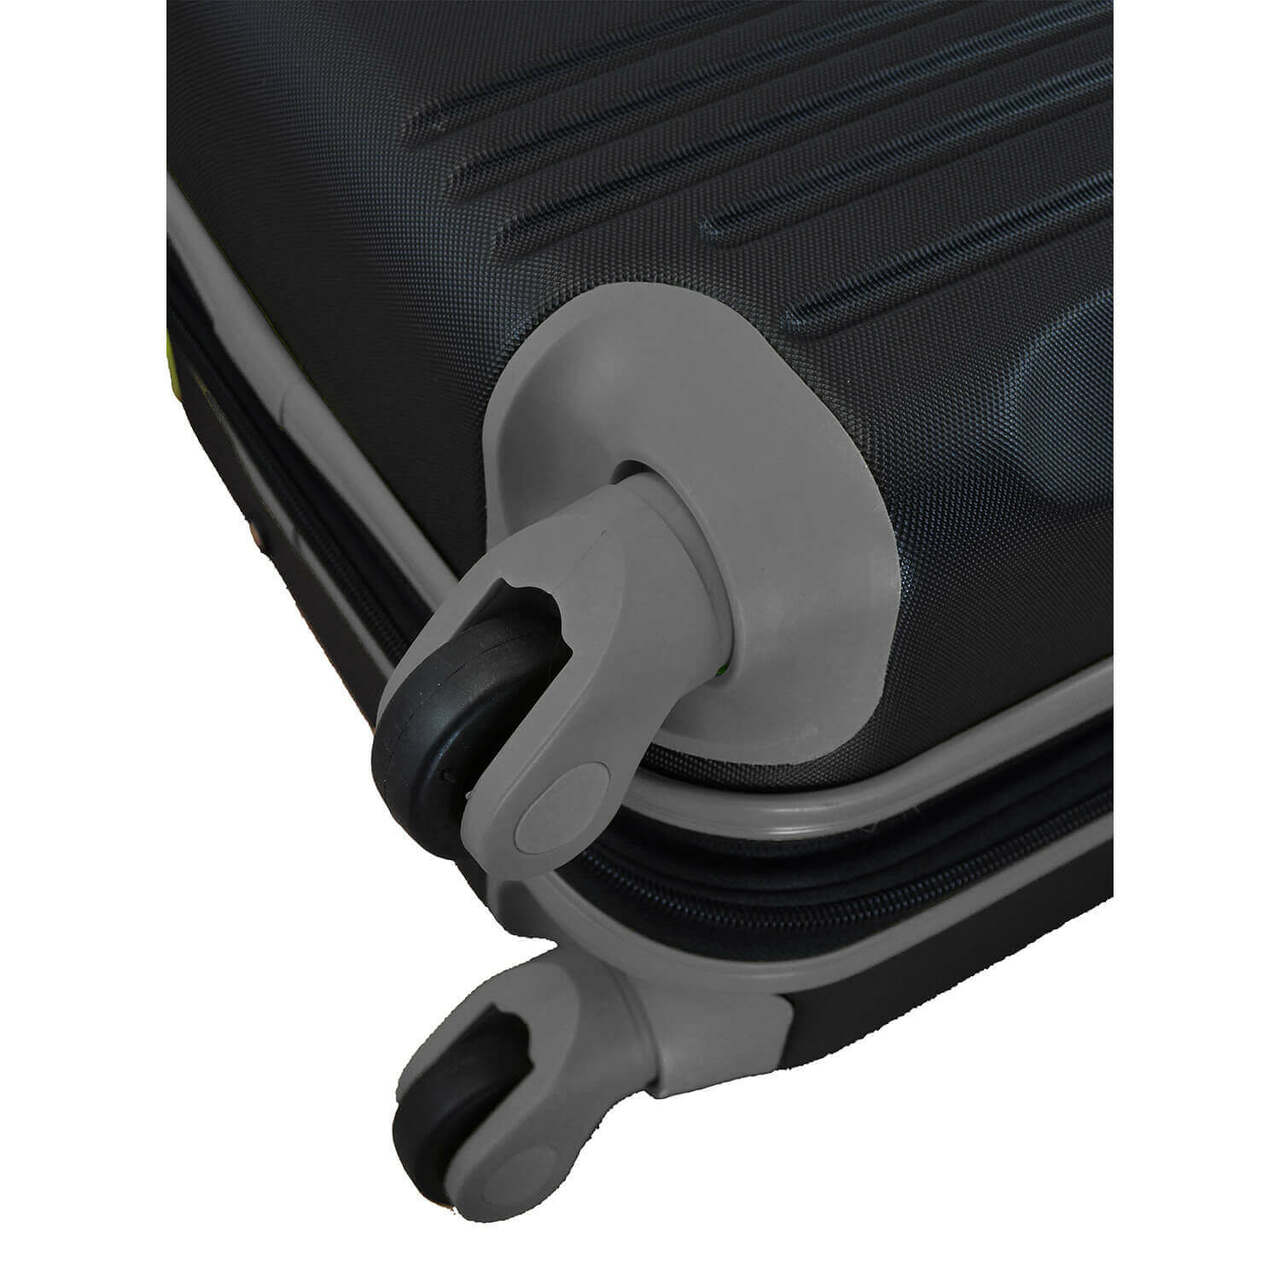 Bucks Carry On Spinner Luggage | Milwaukee Bucks Hardcase Two-Tone Luggage Carry-on Spinner in Gray